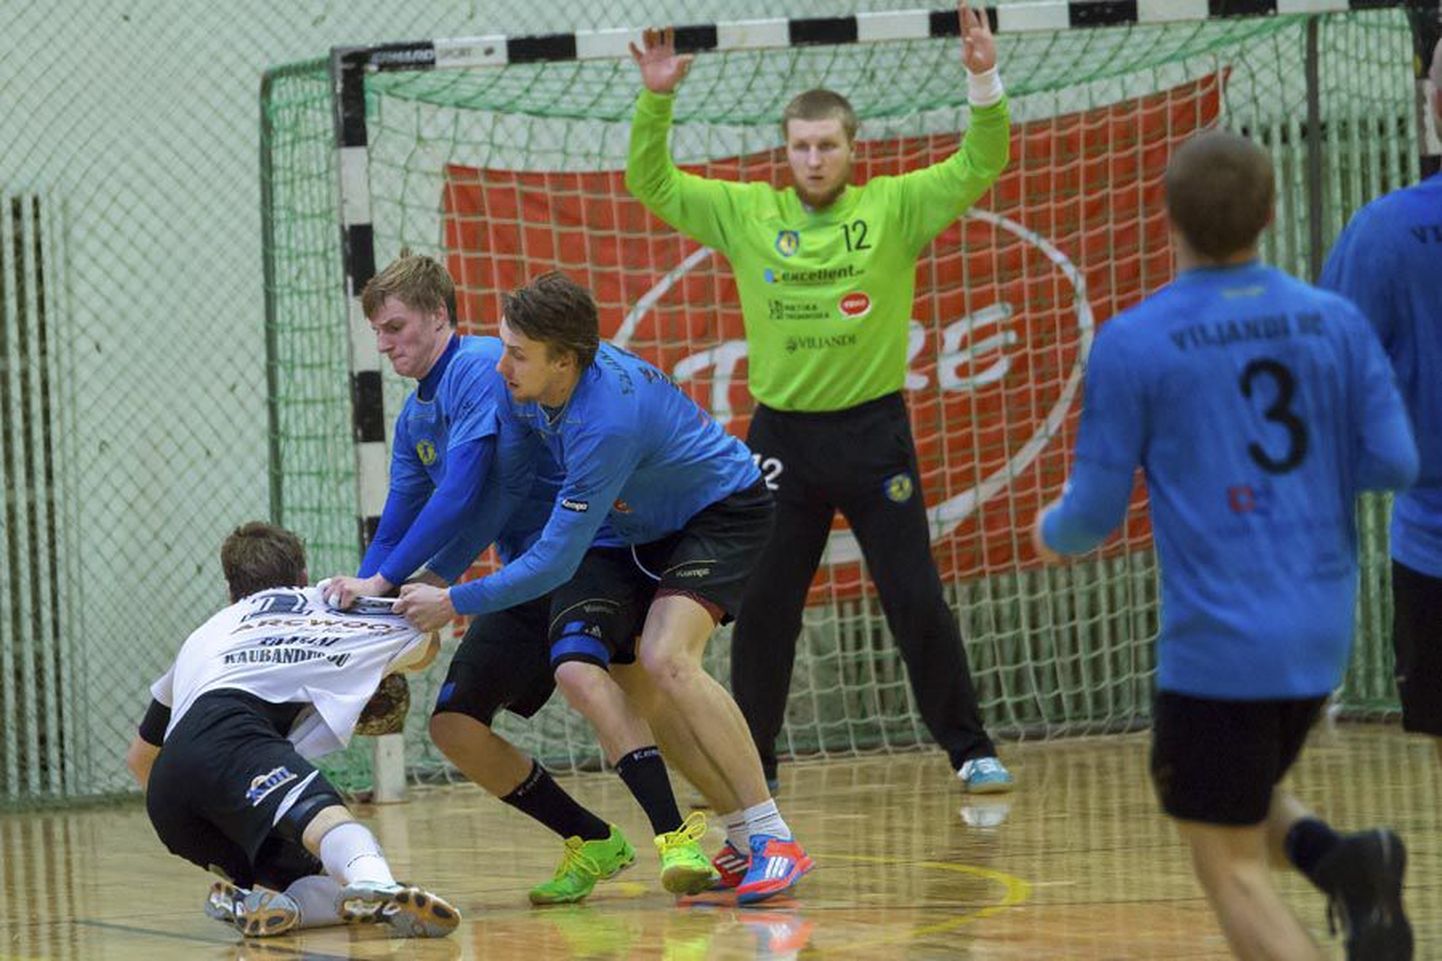 Tänavusel käsipallihooajal nii mõnegi üllatuse pakkunud Viljandi HC meeskond pidi Eesti meistrivõistluste poolfinaalis pärast kõva lahingut Põlva Servitile alla vanduma.